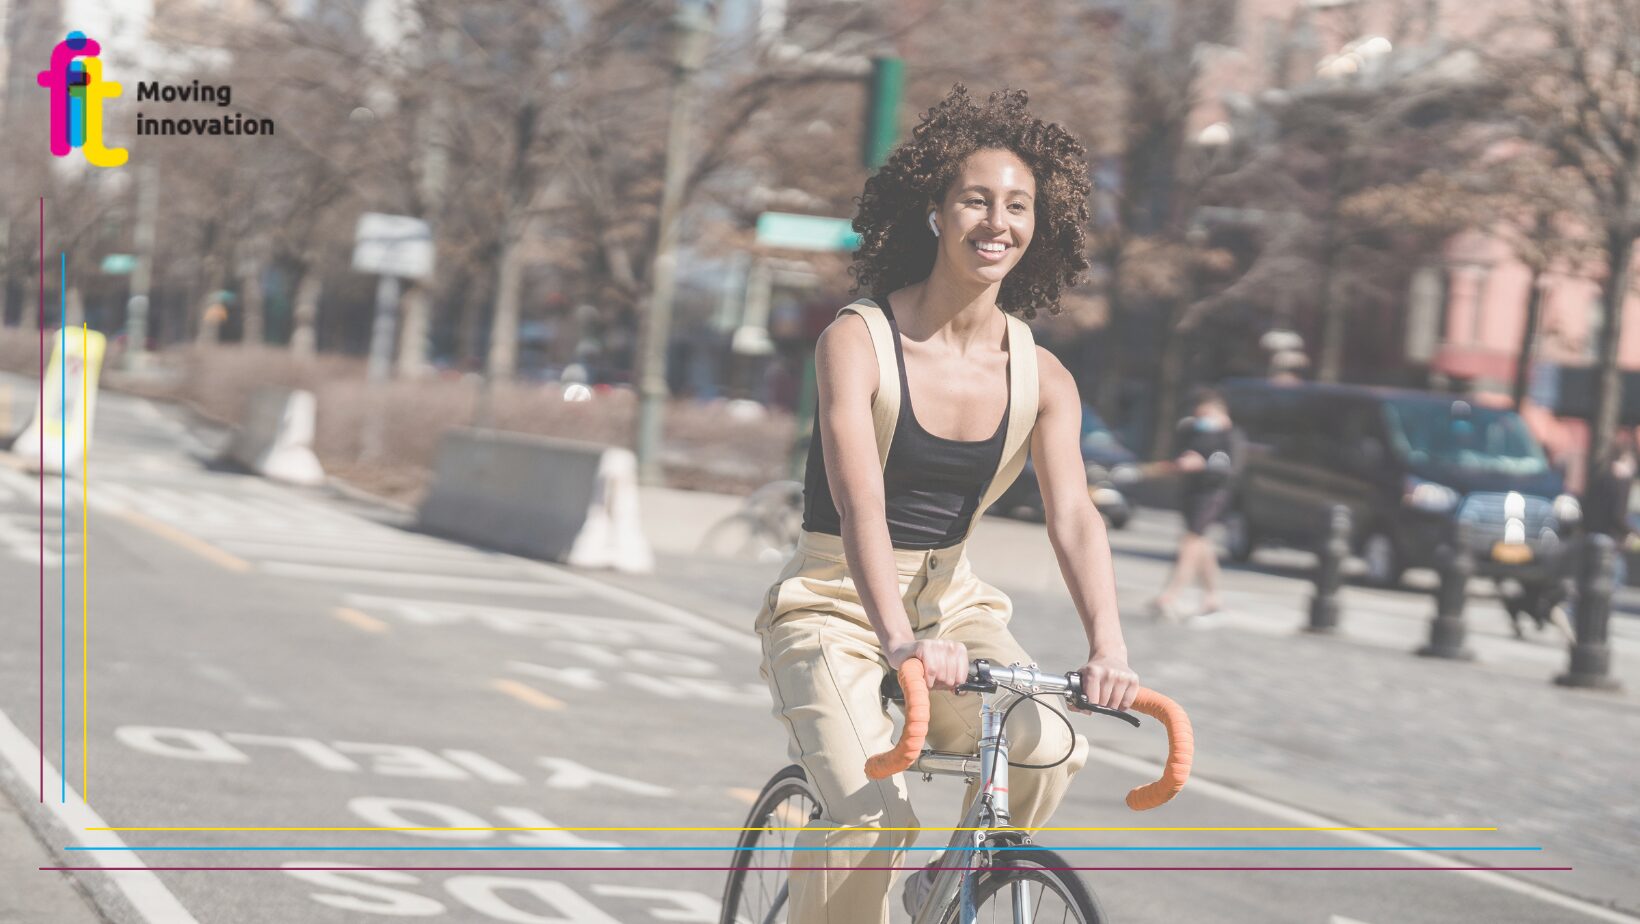 L’UE adotta la Dichiarazione europea sulla mobilità ciclistica per promuovere l’uso della bici come mezzo di trasporto sostenibile